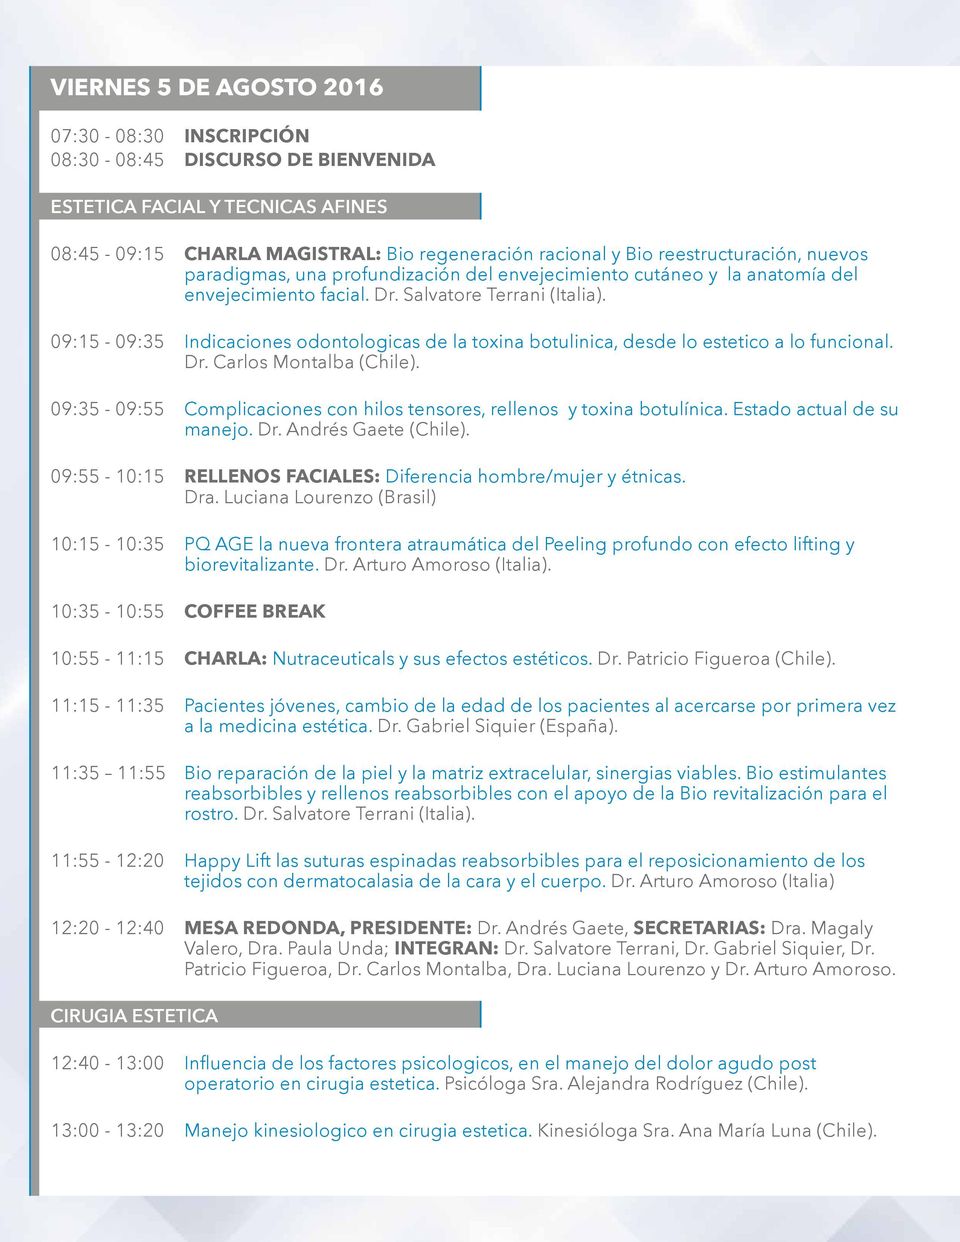 09:15-09:35 Indicaciones odontologicas de la toxina botulinica, desde lo estetico a lo funcional. Dr. Carlos Montalba (Chile).